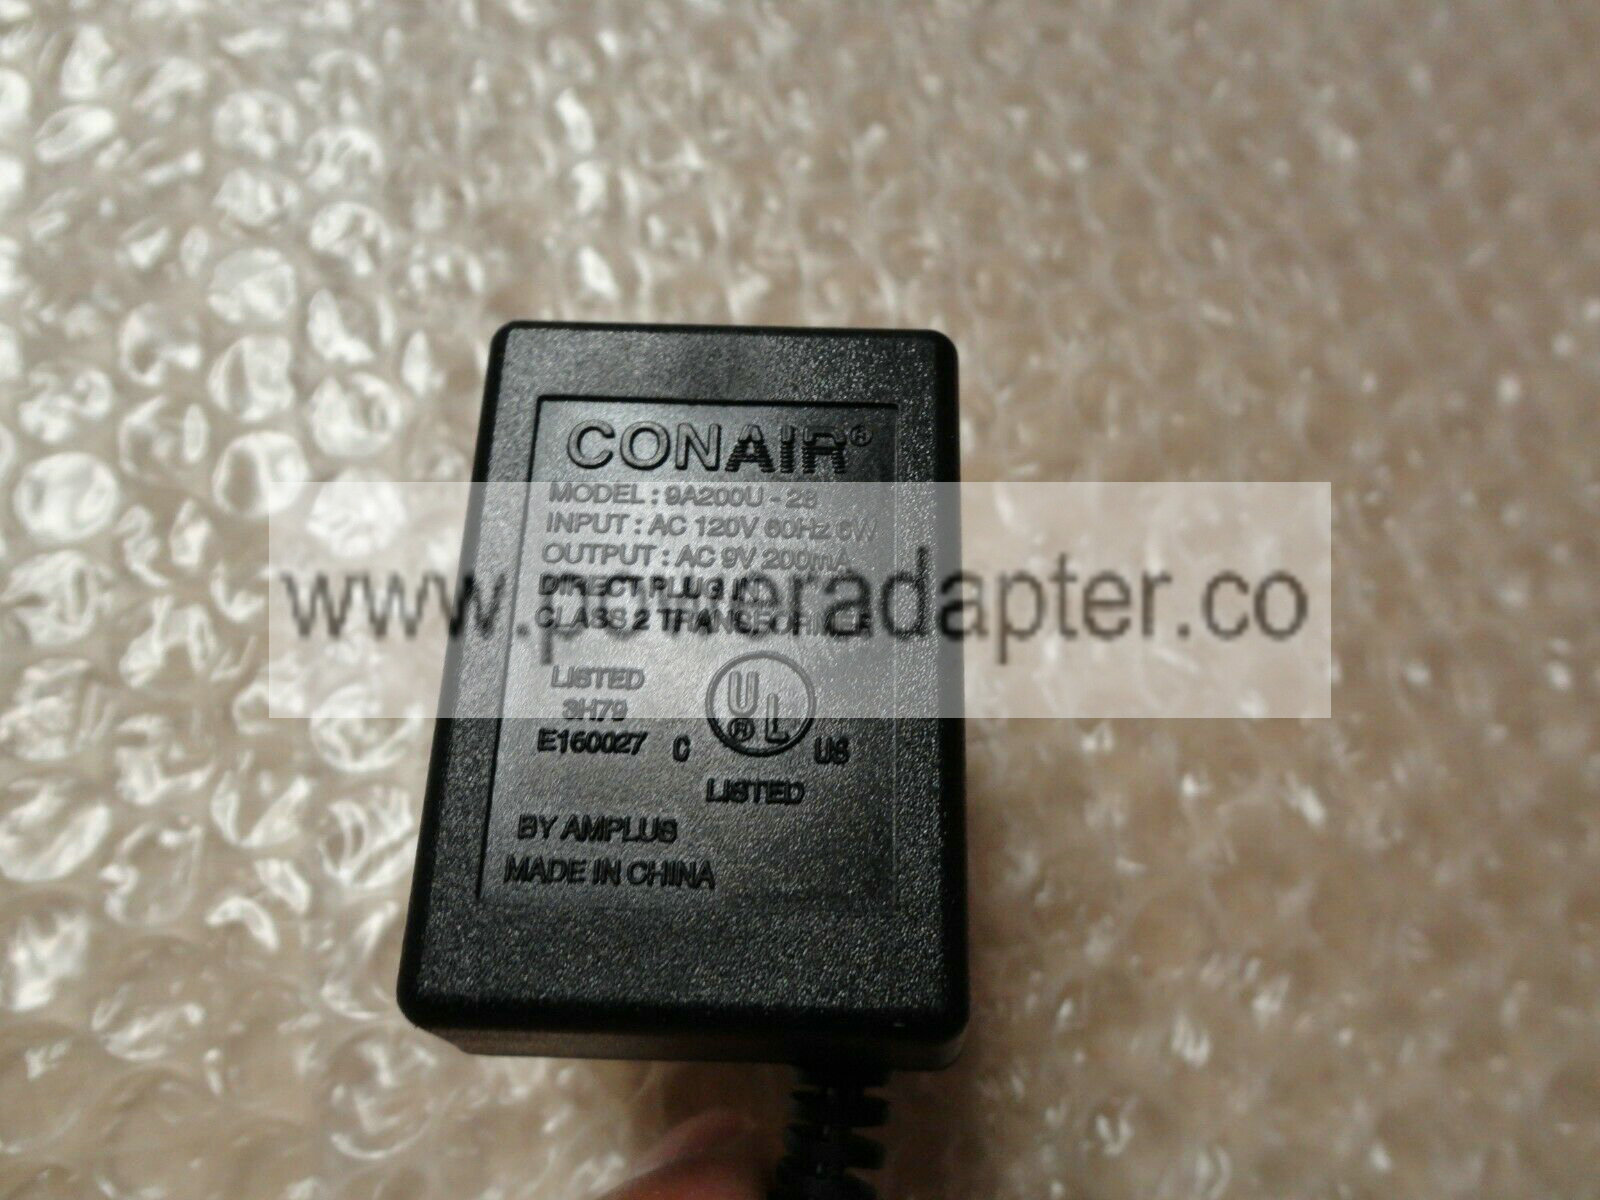 Original OEM CONAIR Adapter Model : 9A200U-28 6VDC 200mA brand: CONAIR model: 9A200U-28 input:Ac 120v 60hz 6w outp